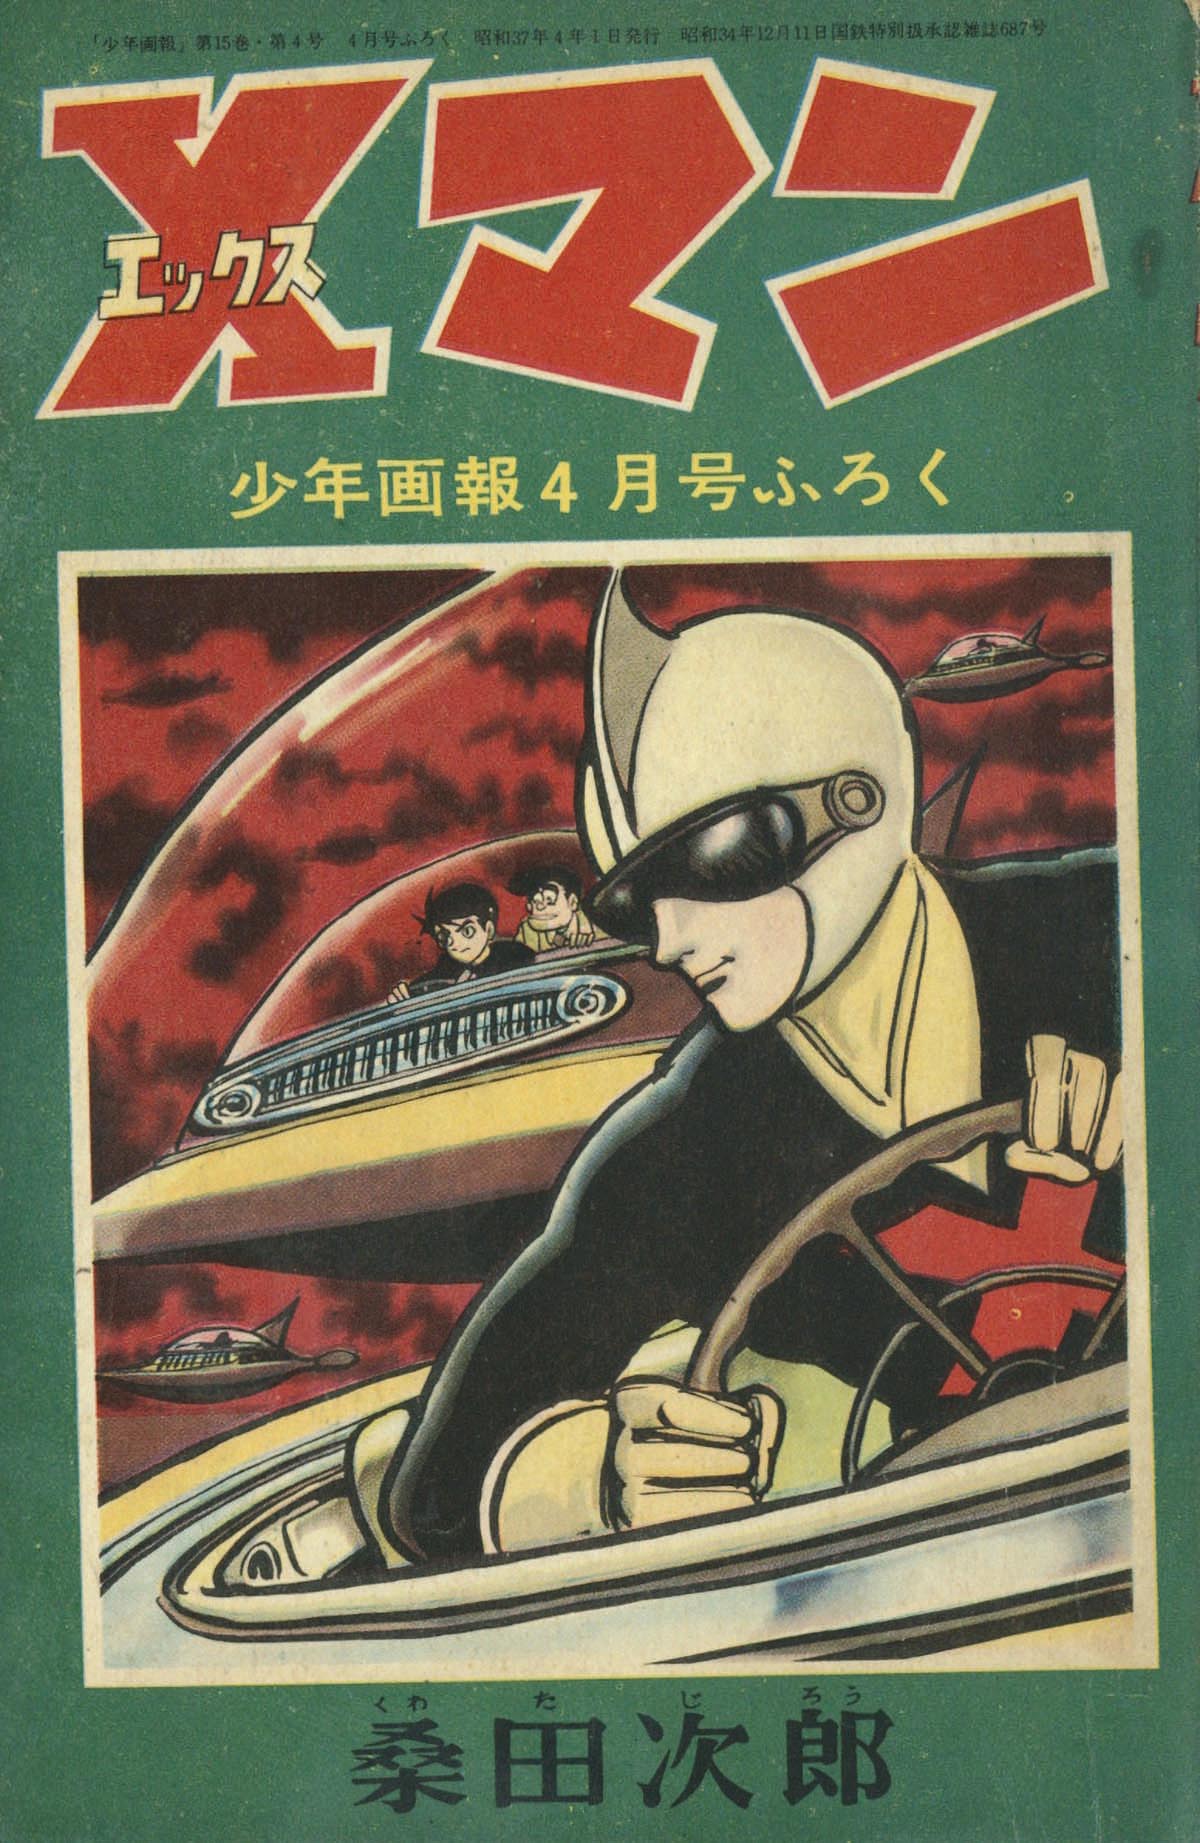 桑田次郎「Xマン」1962(S37)04.1ふろく